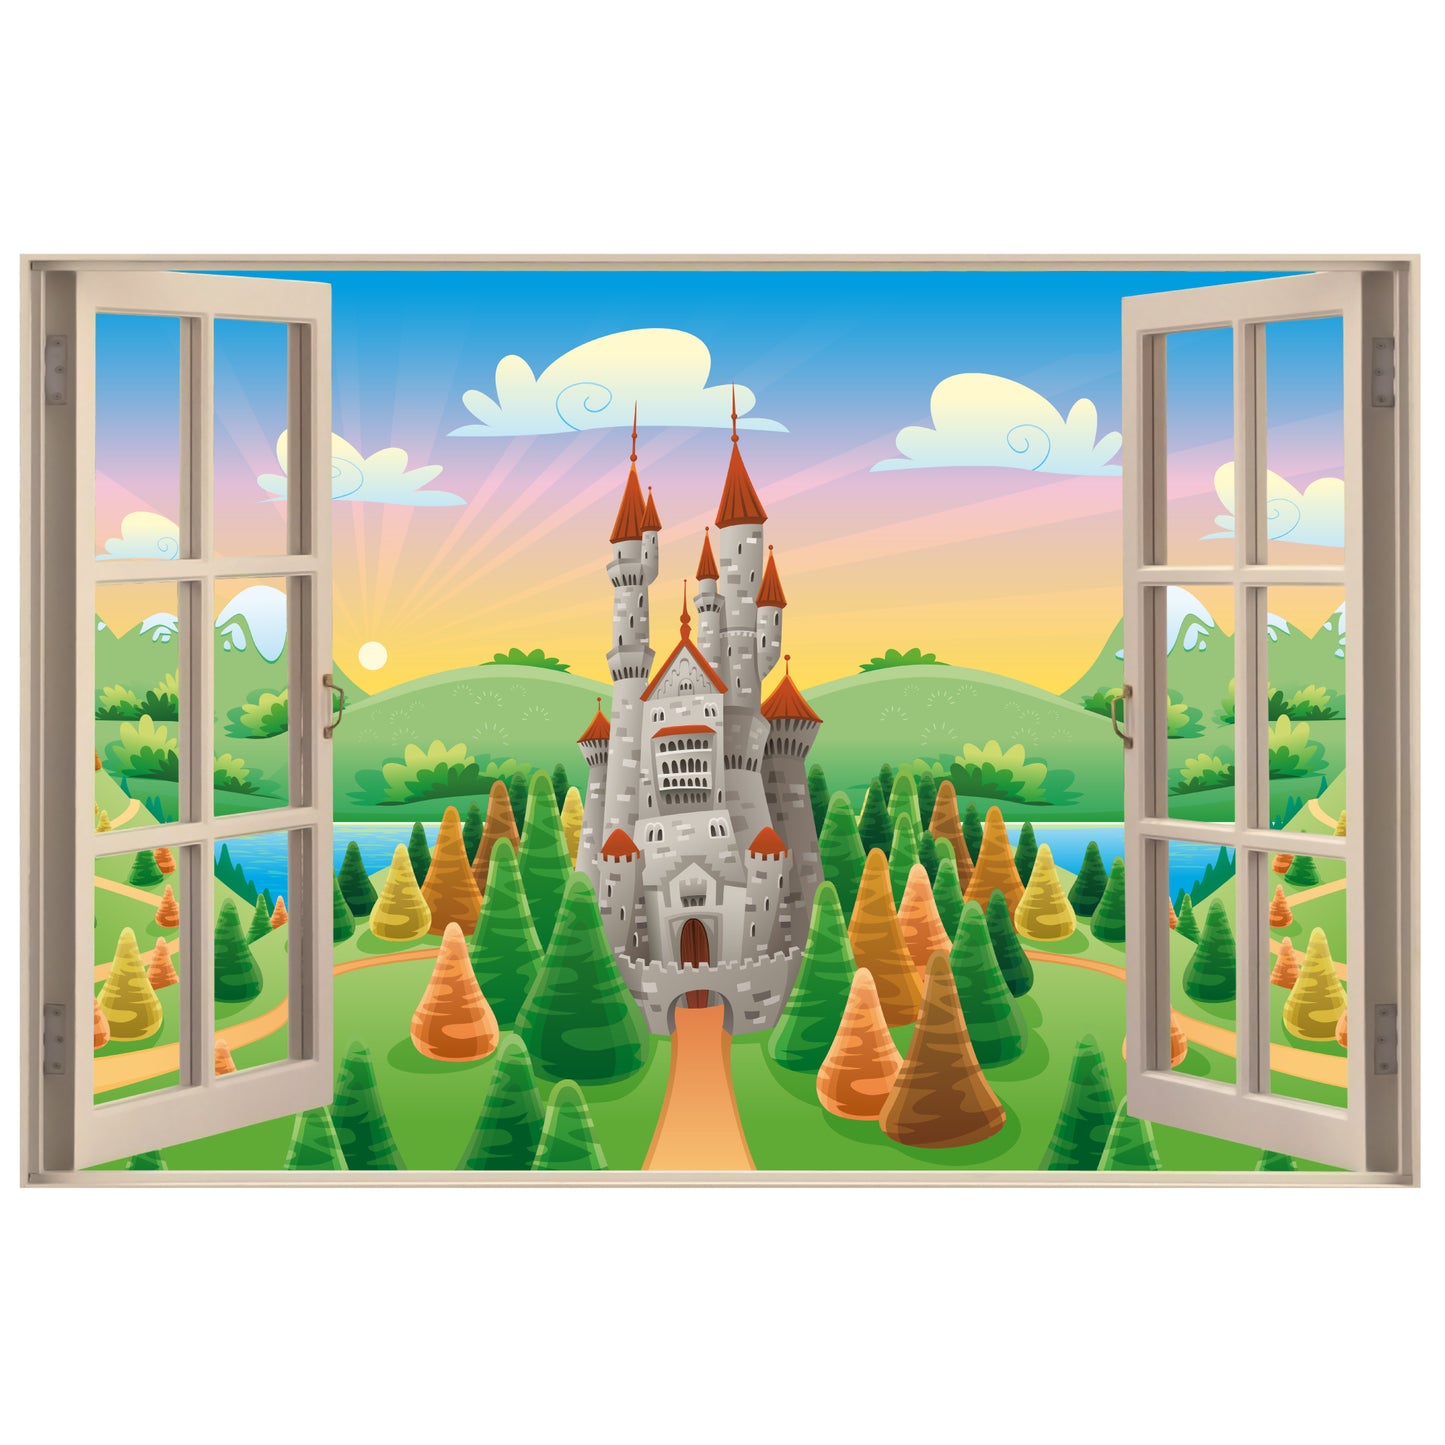 Princess Wall Sticker - Castle Sunrise Open Window Decal Art